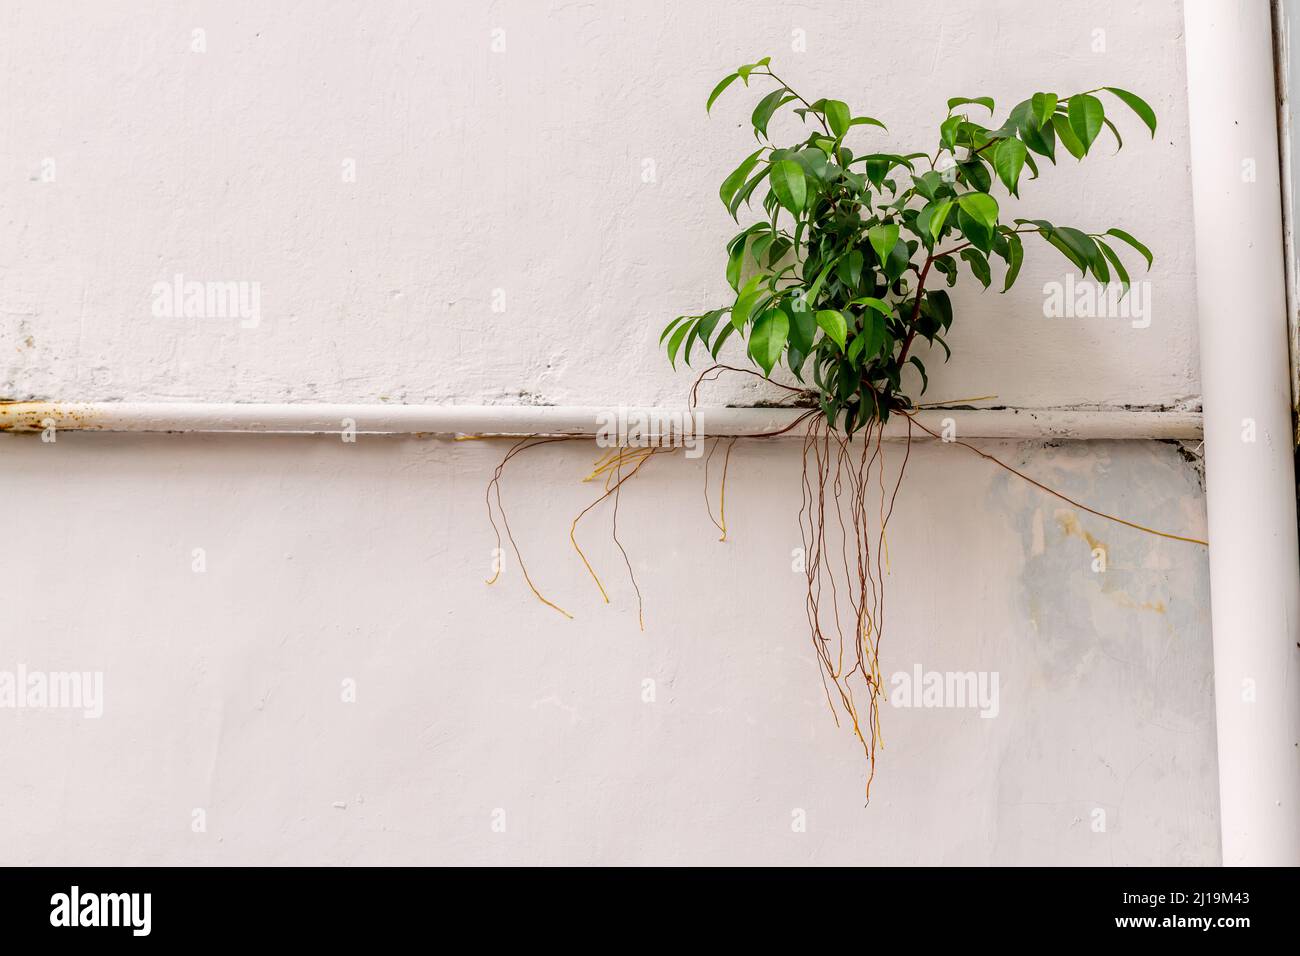 Il piccolo albero di banyan prospera nelle fessure nelle pareti e utilizza i corsi d'acqua per ottenere un punto di appoggio al sole, la natura trova il suo modo Foto Stock